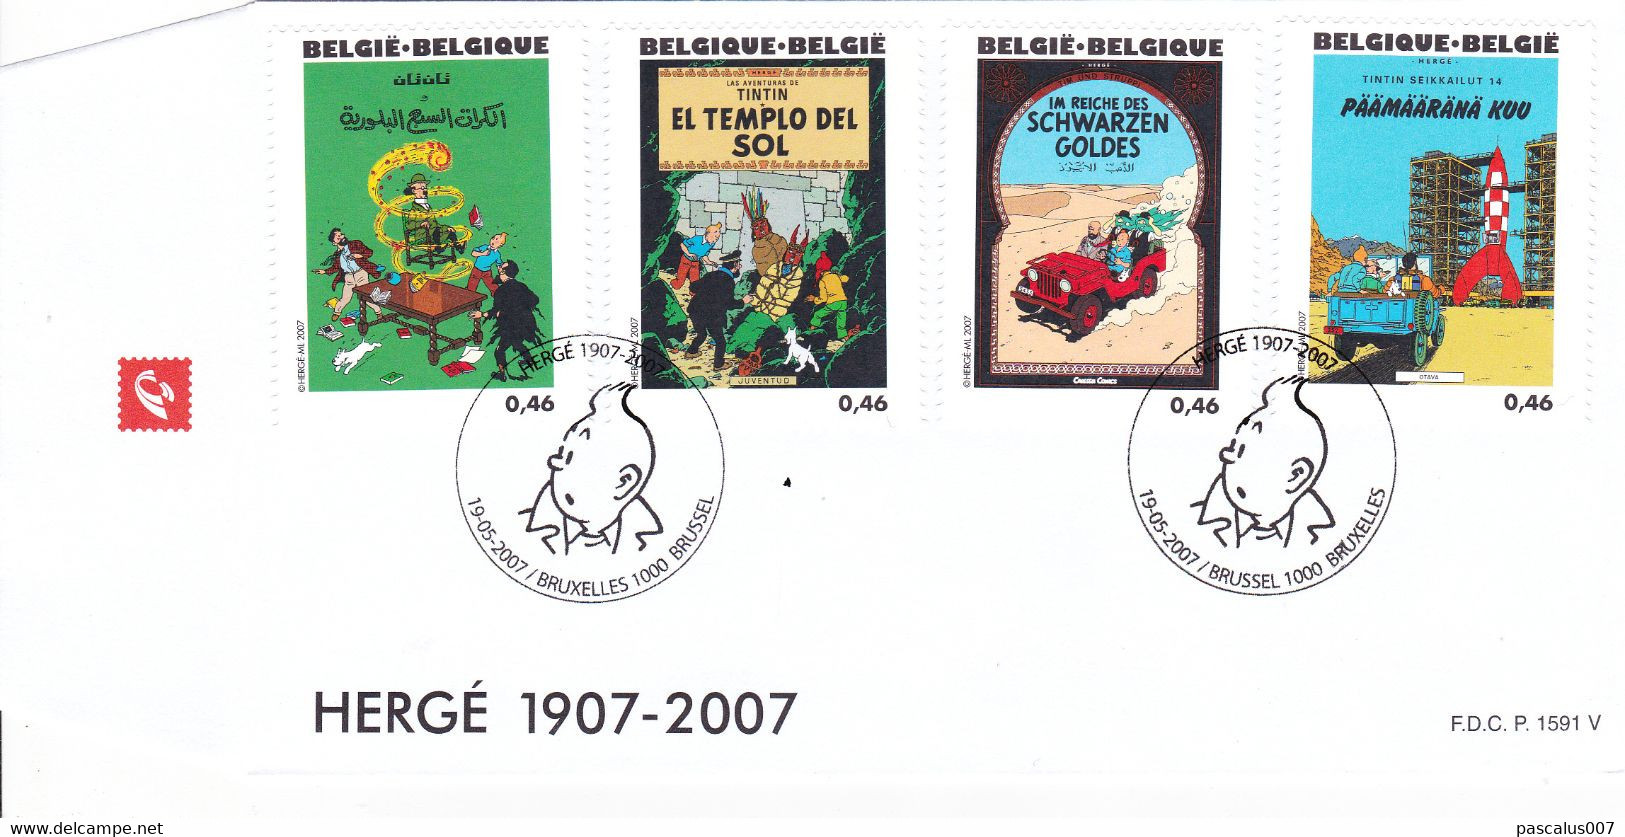 B01-389 Bloc 143 FDC P1591 V 3649 3650 3651 3652 1907 2007 Tintin Kuifje 4 Albums Hergé 19-05-2007 Bruxelles 1000 Bruss - 2001-2010